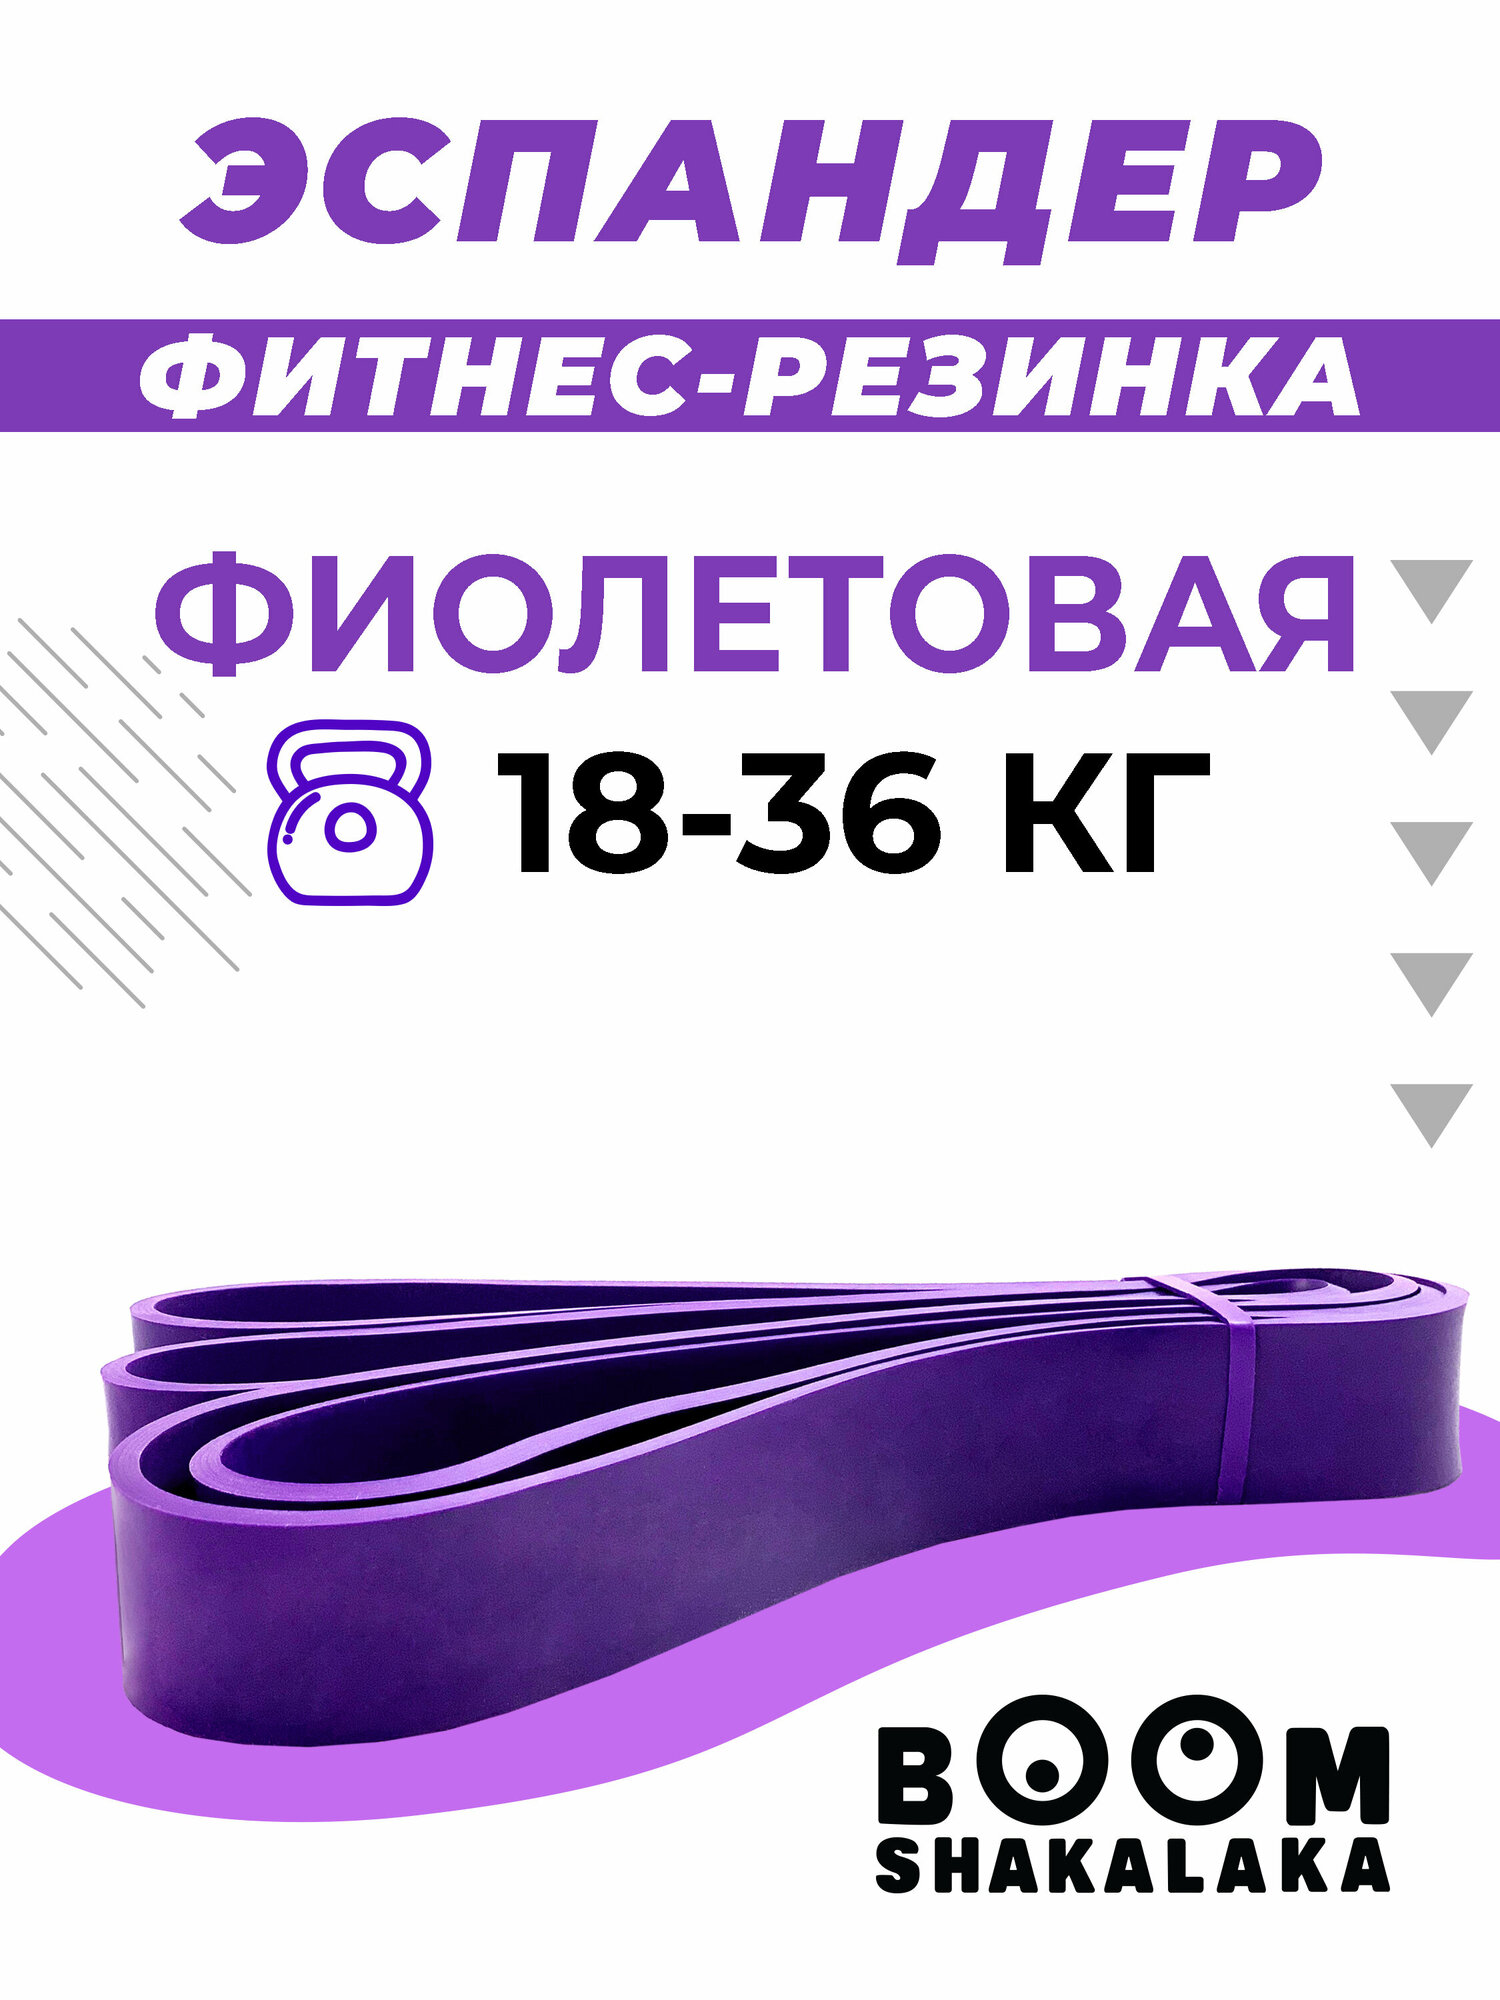 Эспандер ленточный Boomshakalaka, нагрузка 18-36 кг,208x3.2x0.45 см, материал TPE, цвет фиолетовый, фитнес-резинка, петля для йоги, резинка для подтягивания